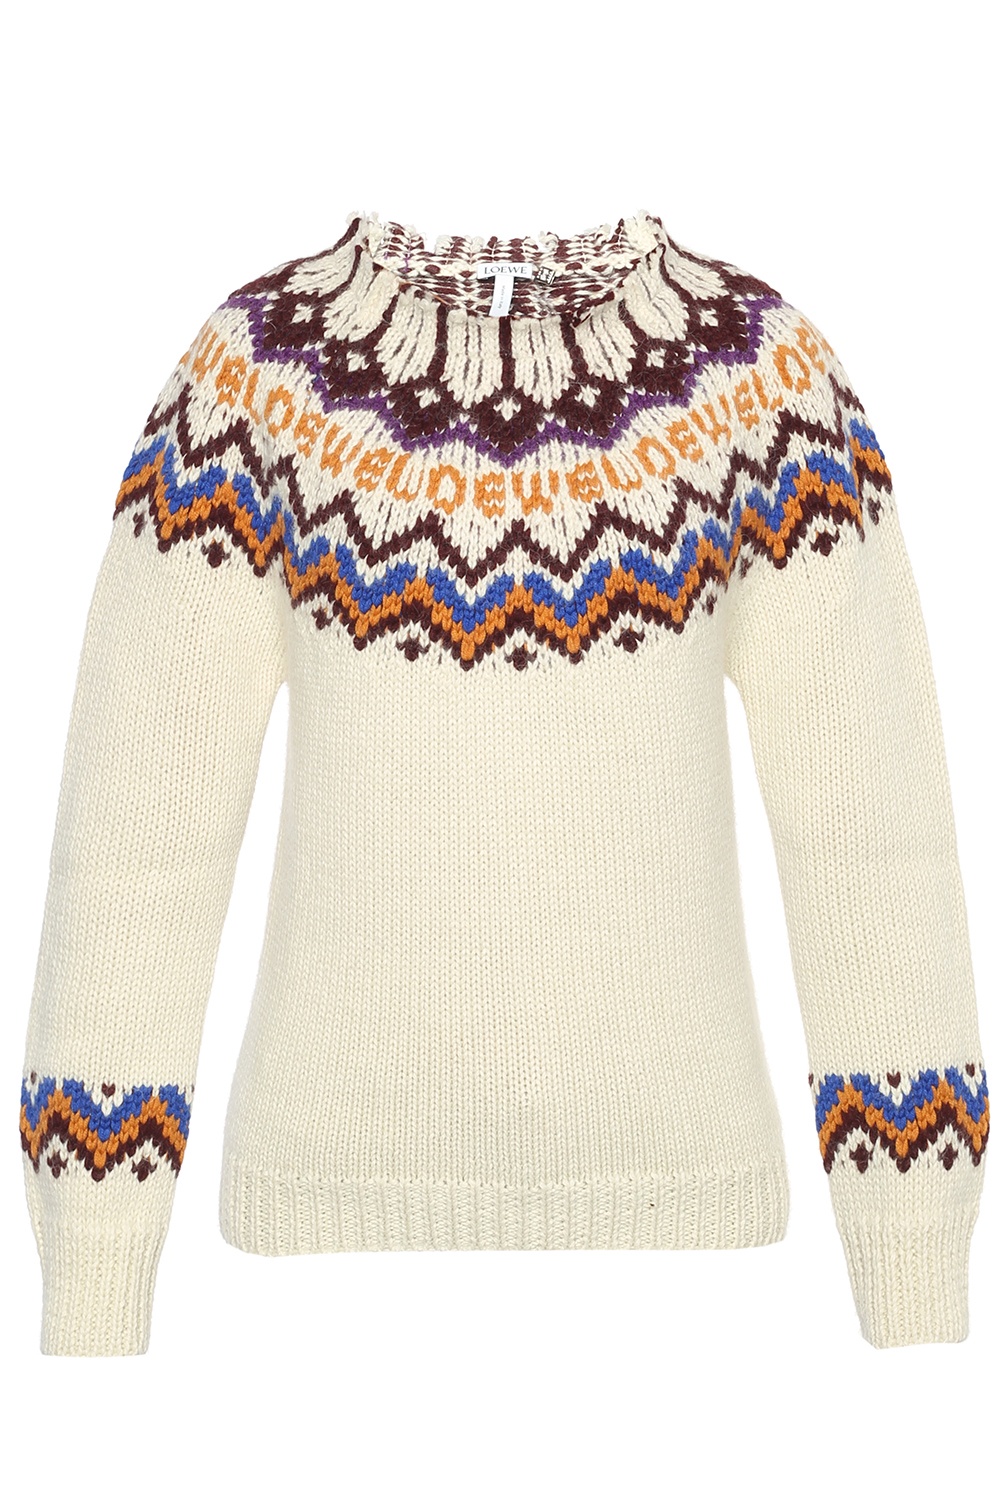 White Turtleneck sweater Loewe - Vitkac GB